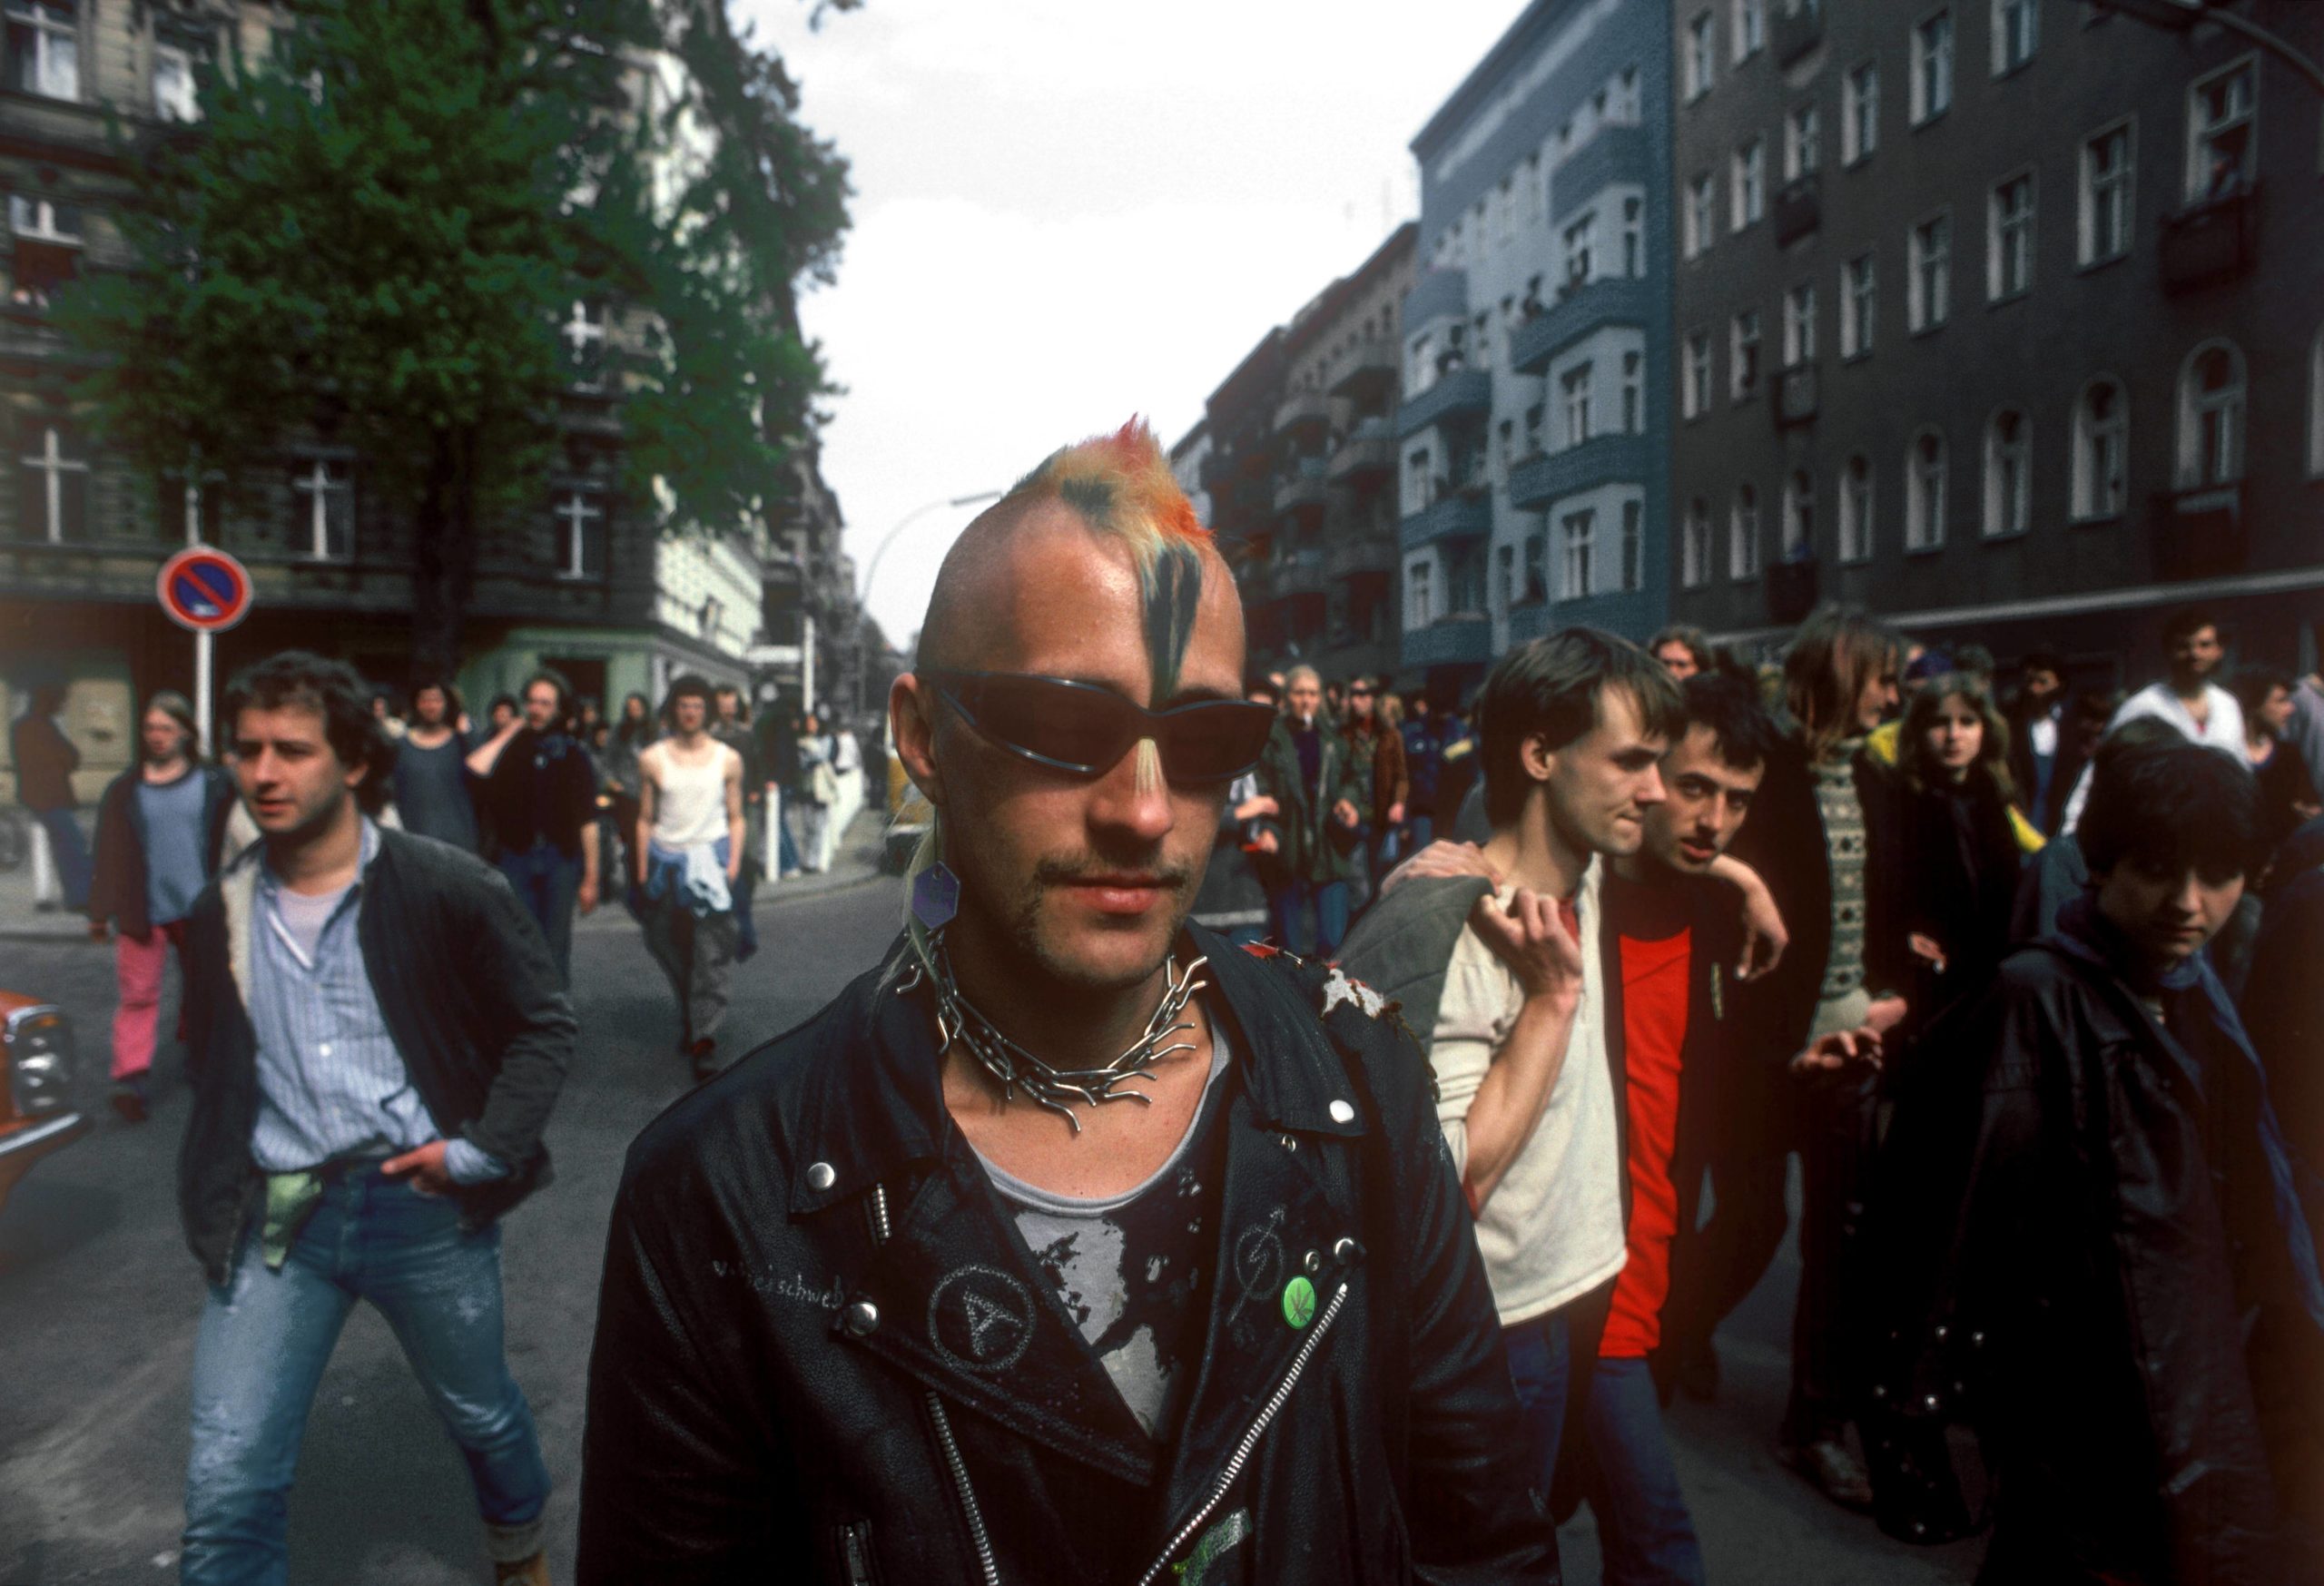 Punks in Berlin: Punker auf einer Demonstration in Berlin, 1984. Foto: Imago/Günter Schneider